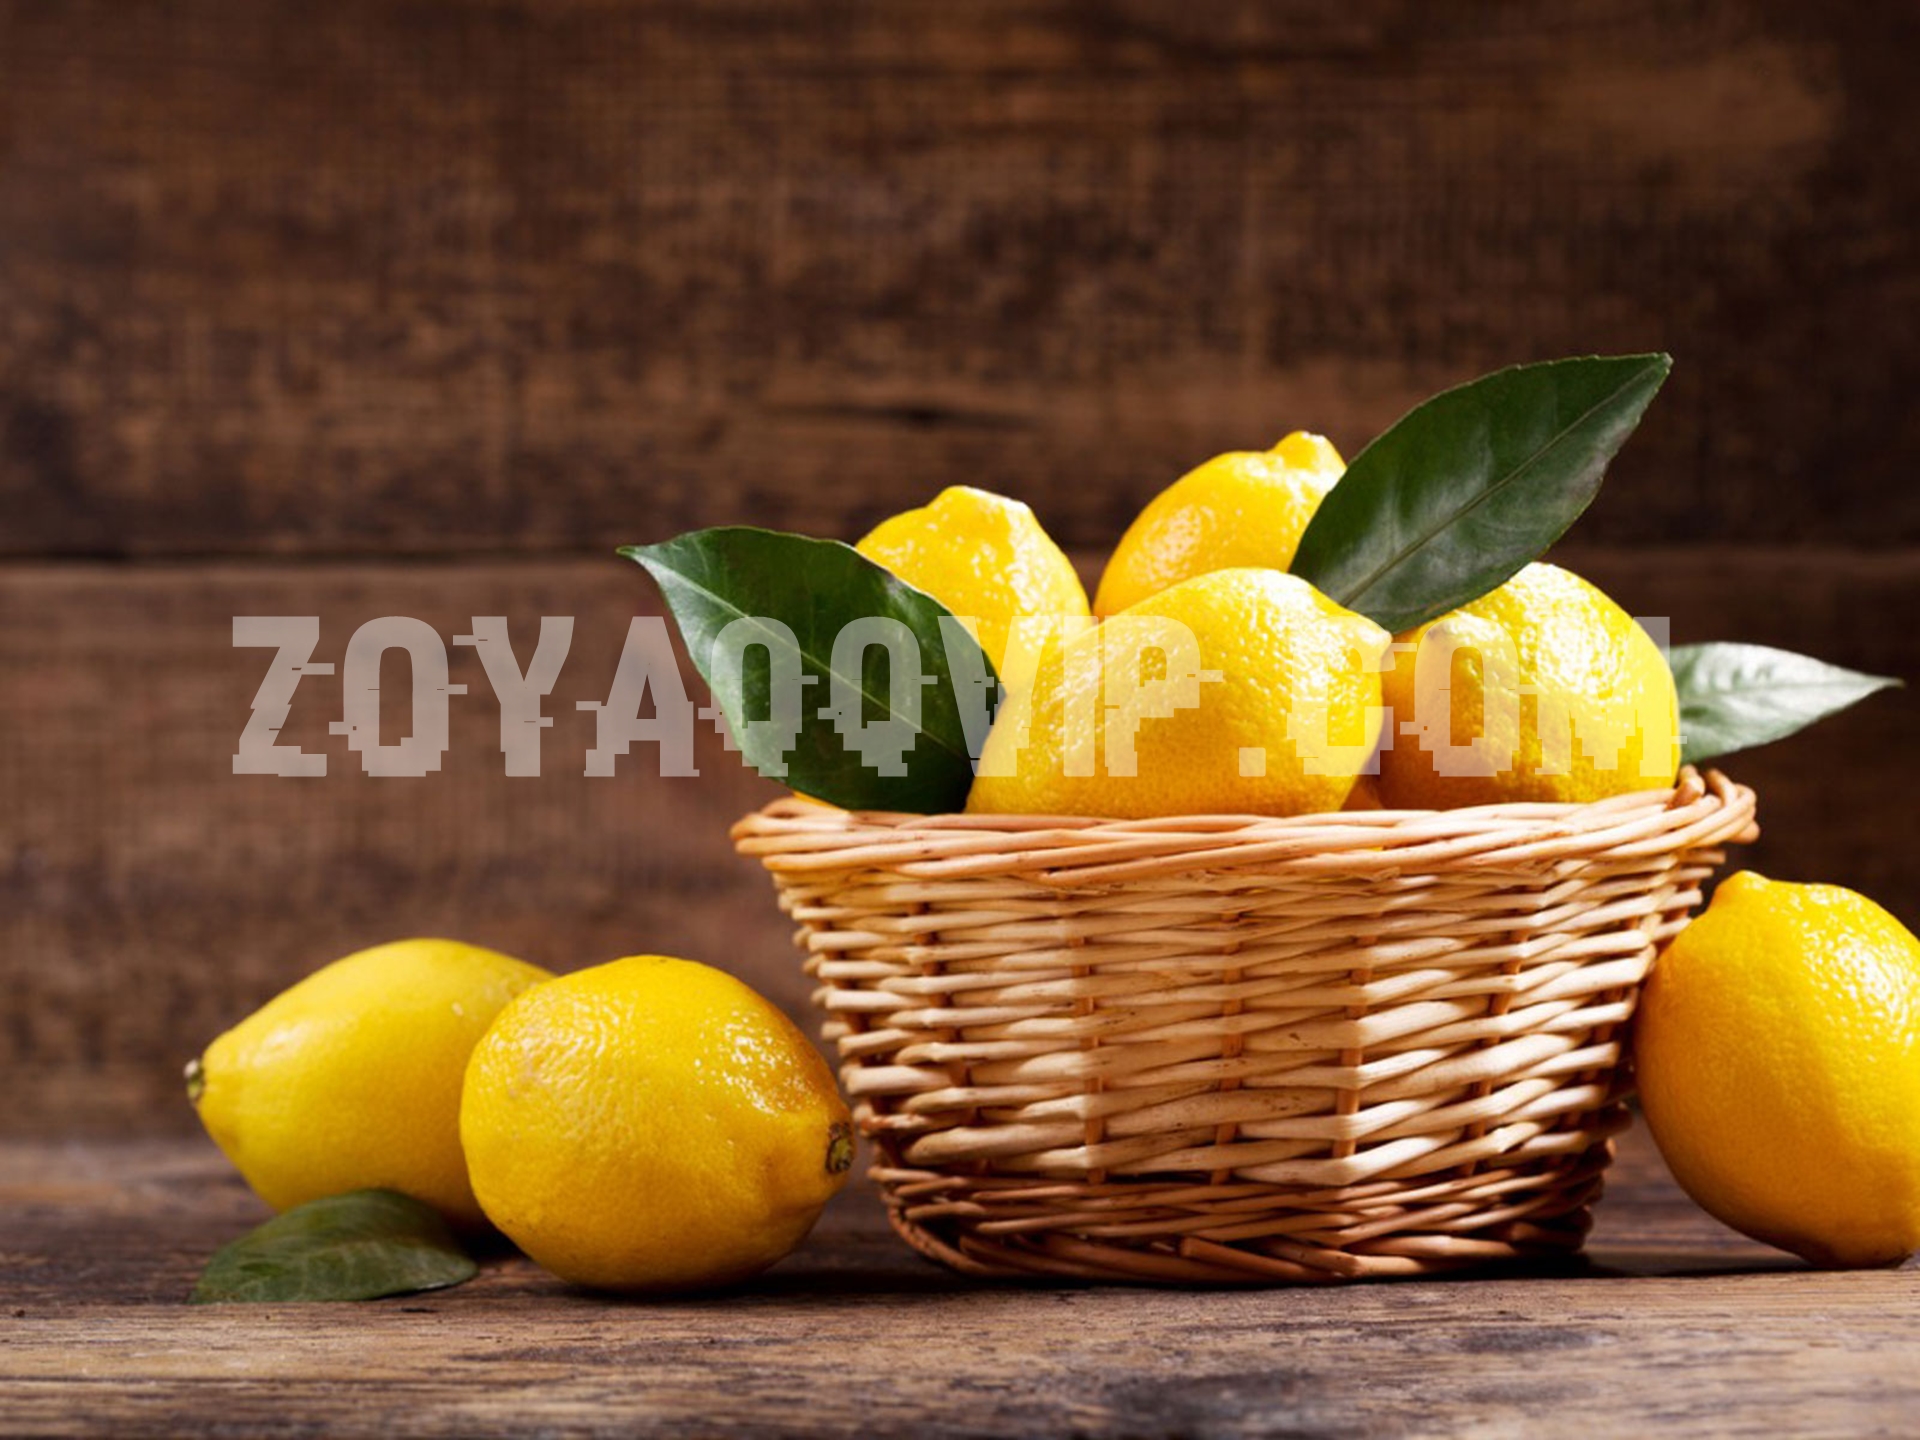 Manfaat Minum Air Lemon Bagi Kesehatan Tubuh